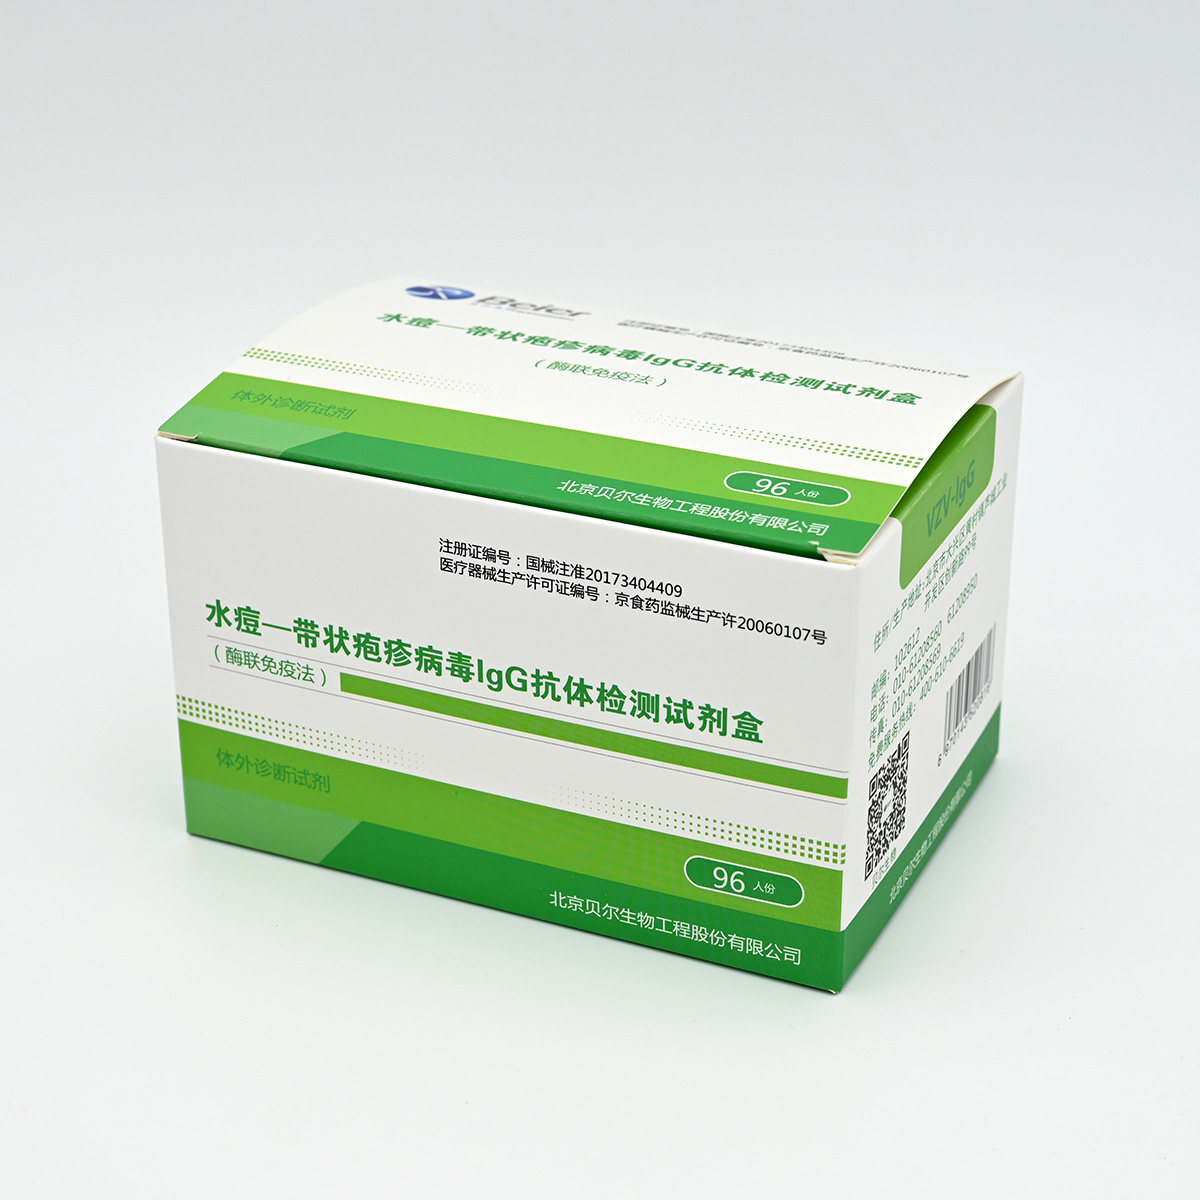 【贝尔】水痘-带状疱疹病毒IgG抗体检测试剂盒(酶联免疫法)